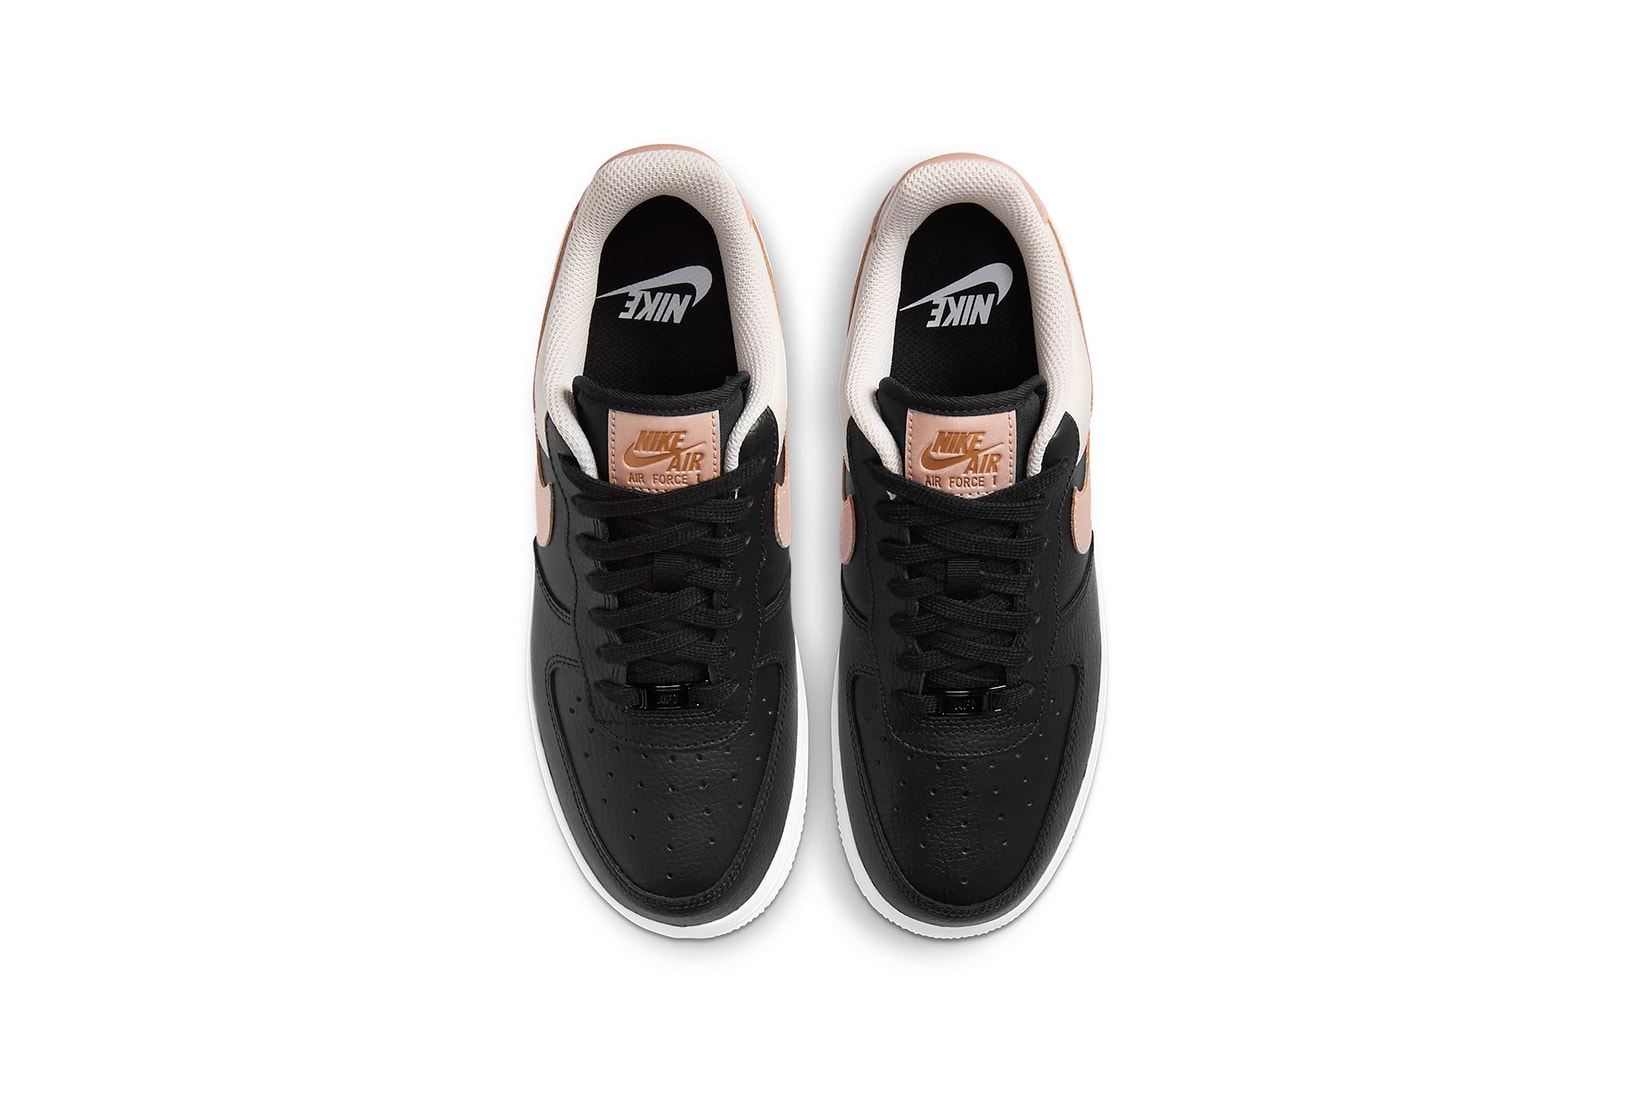 nike air force 1 07 womens sneakers black pink beige white colorway sneakerhead footwear shoes